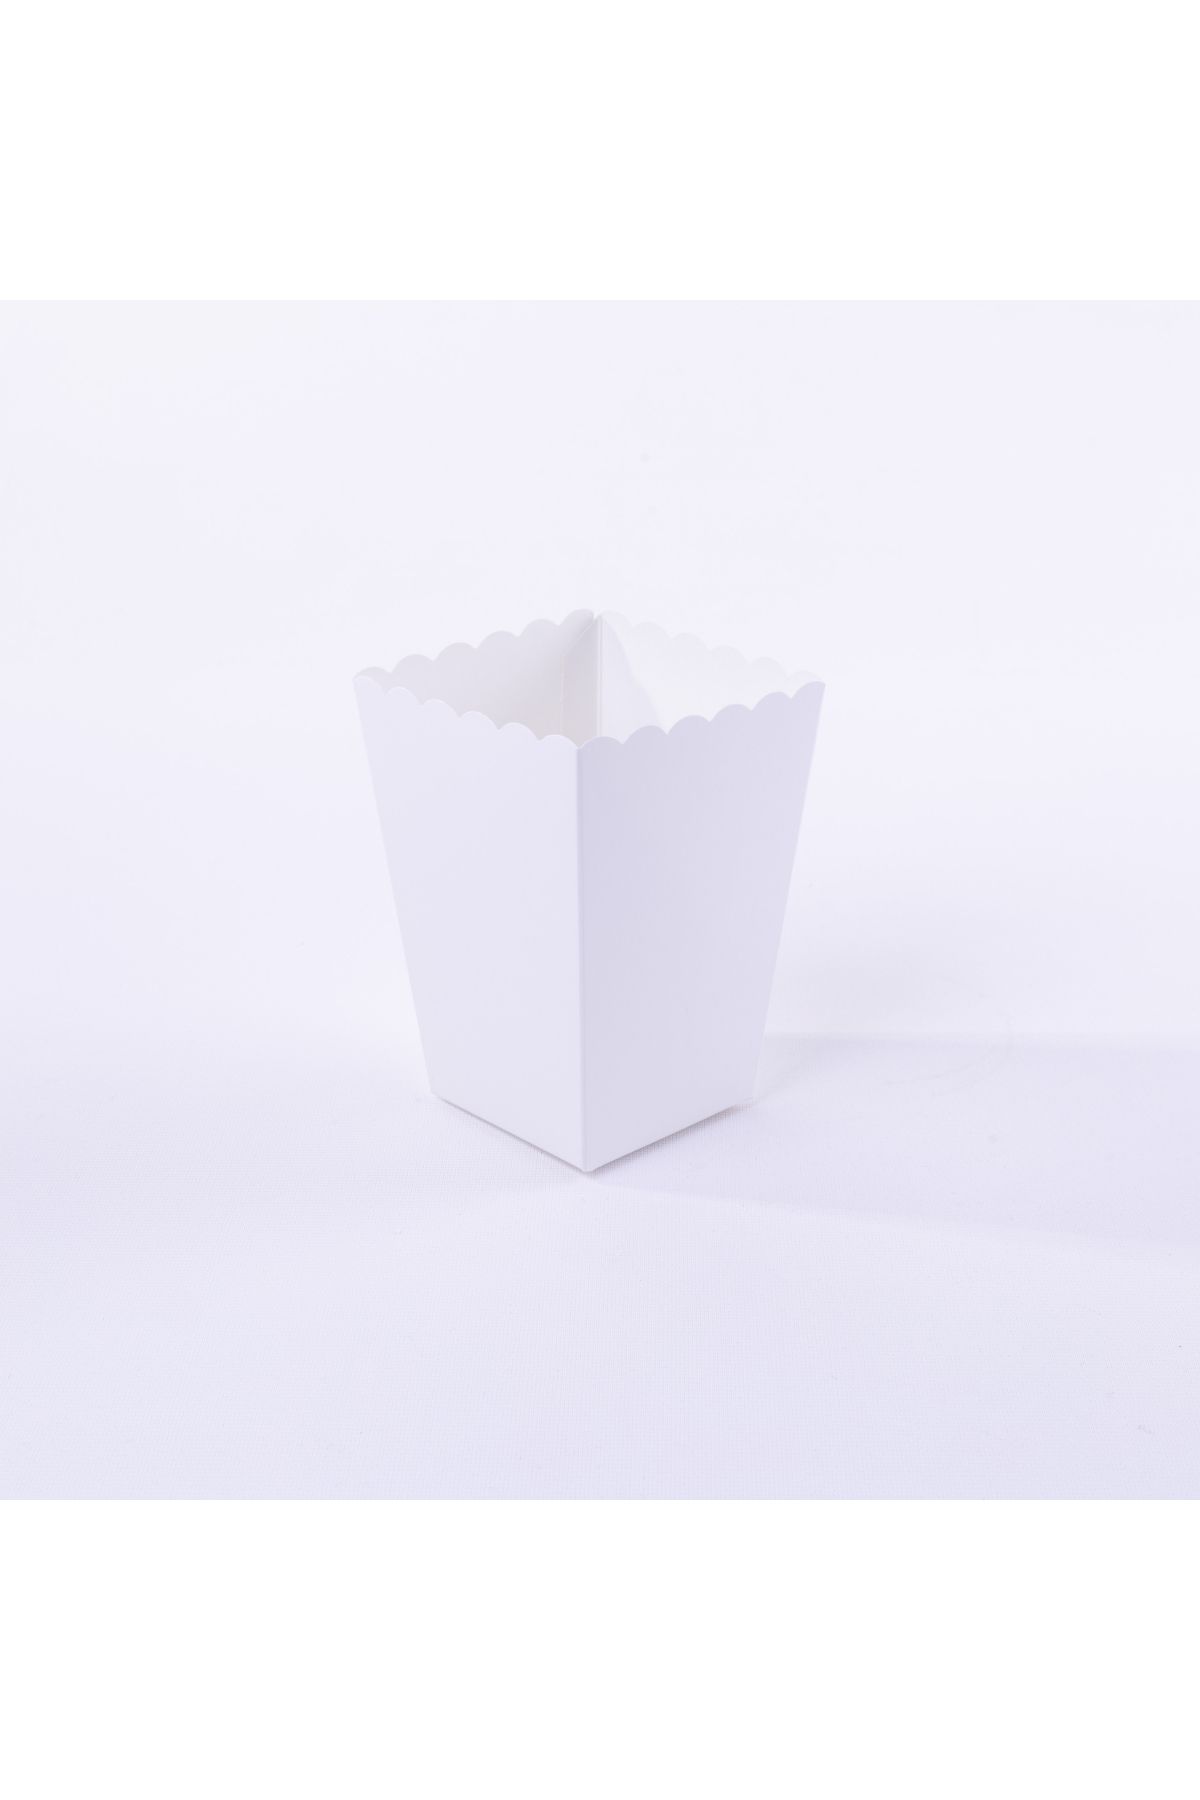 Bimotif Beyaz renkli karton popcorn kutusu 4 adet